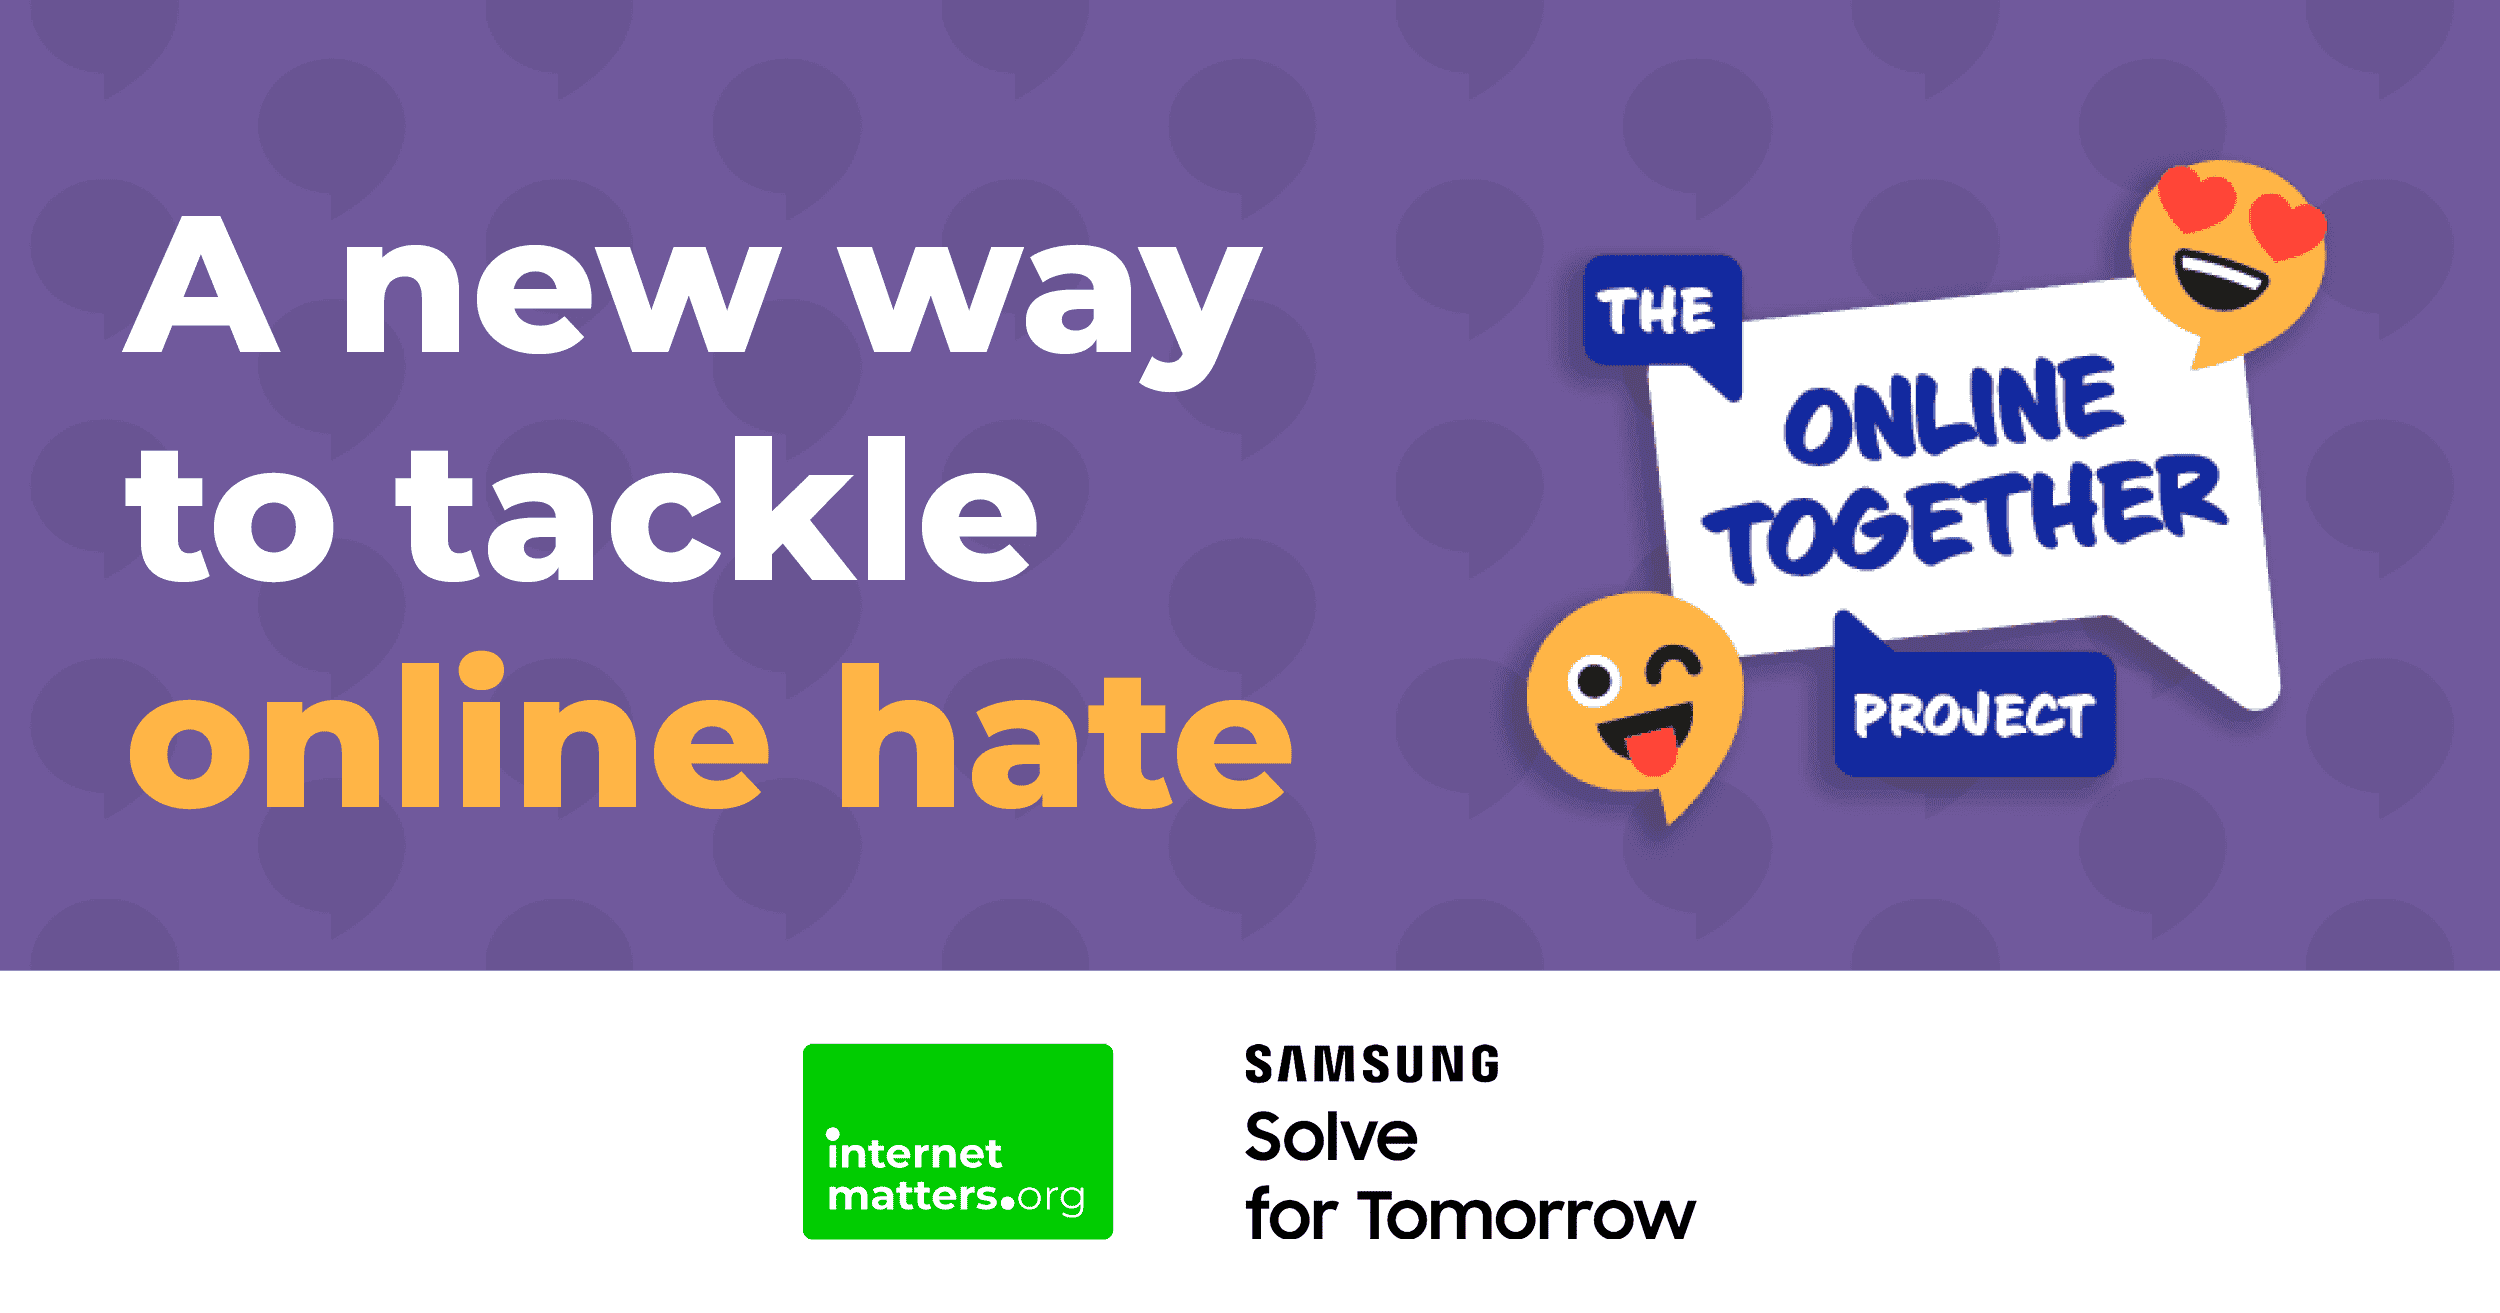 «Новый способ борьбы с ненавистью в Интернете» с логотипом проекта «Вместе онлайн».